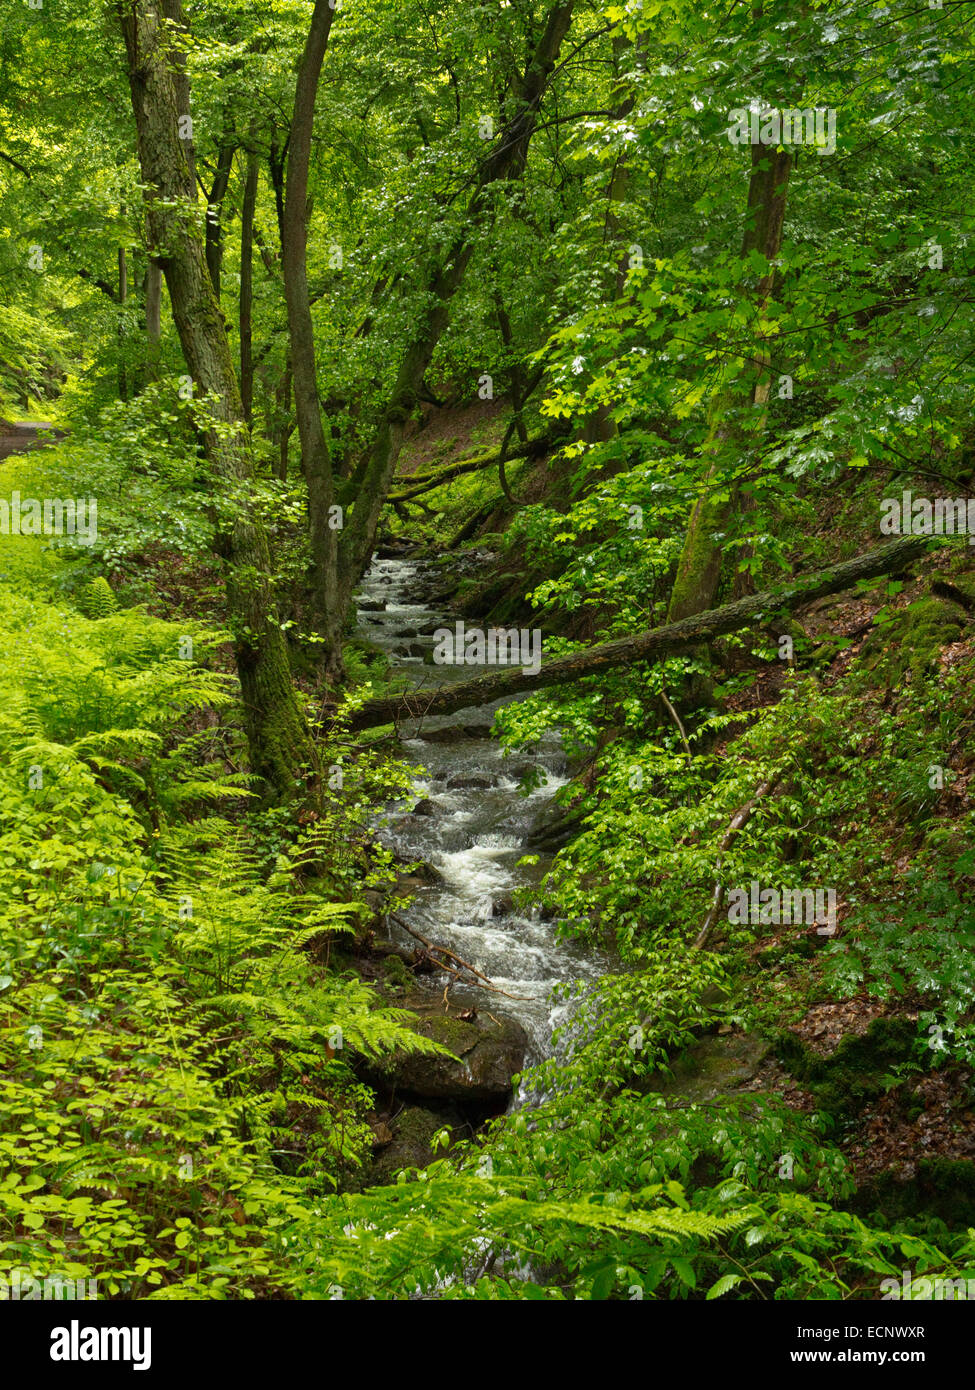 Bach im Wald von Morgenbach Tal südlich von Trechtingshausen, entlang